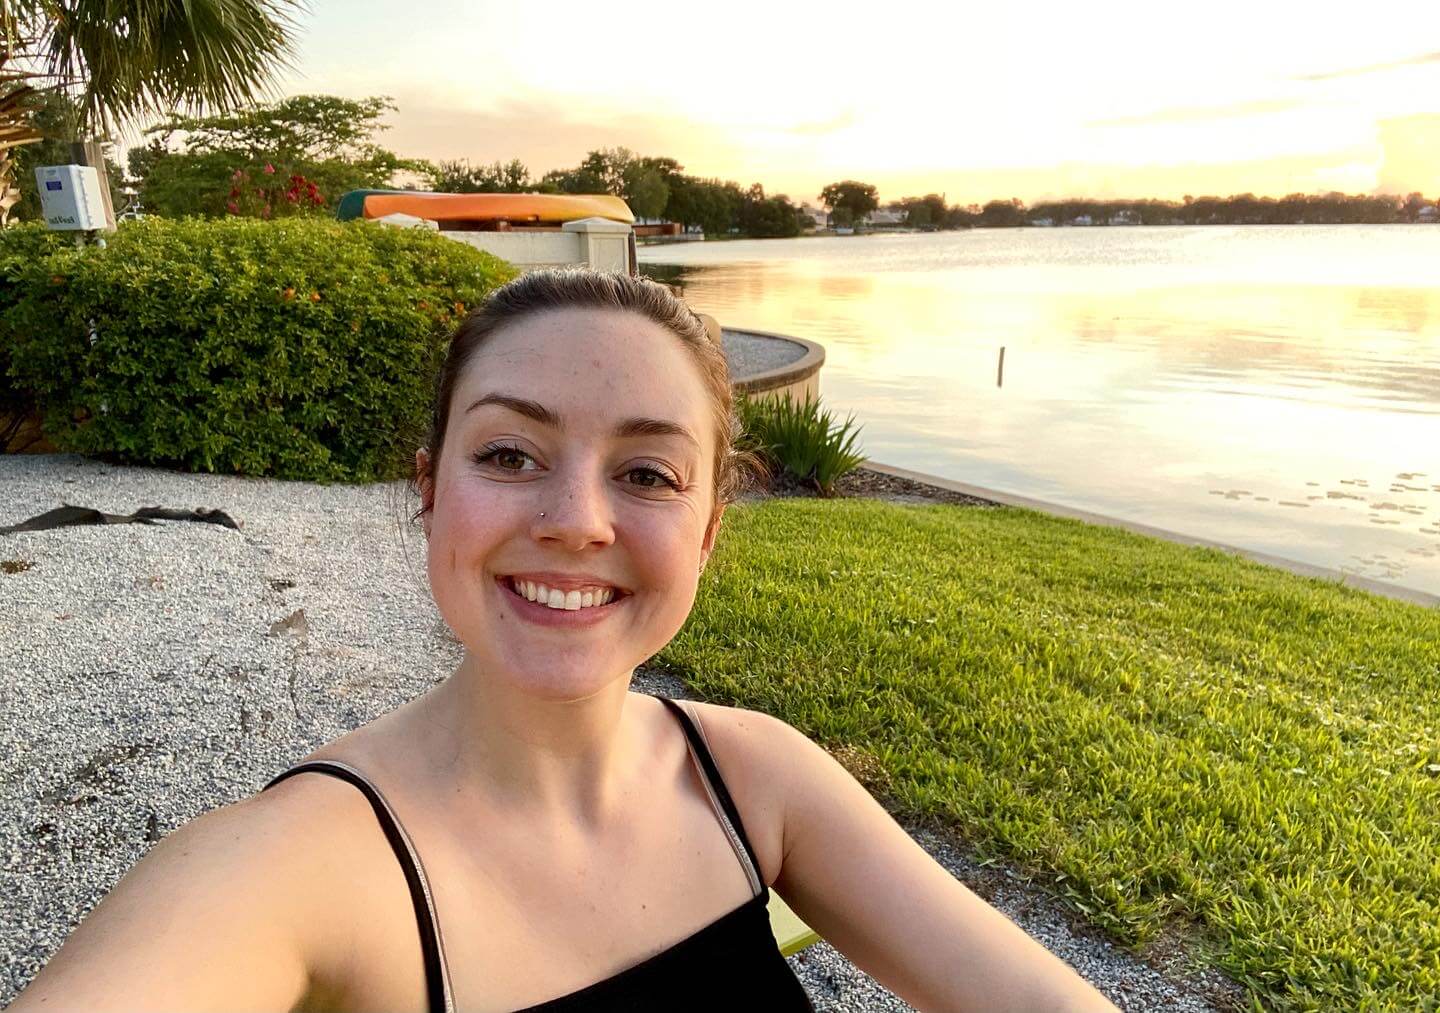 Hannah enjoys taking s lakeside selfie...